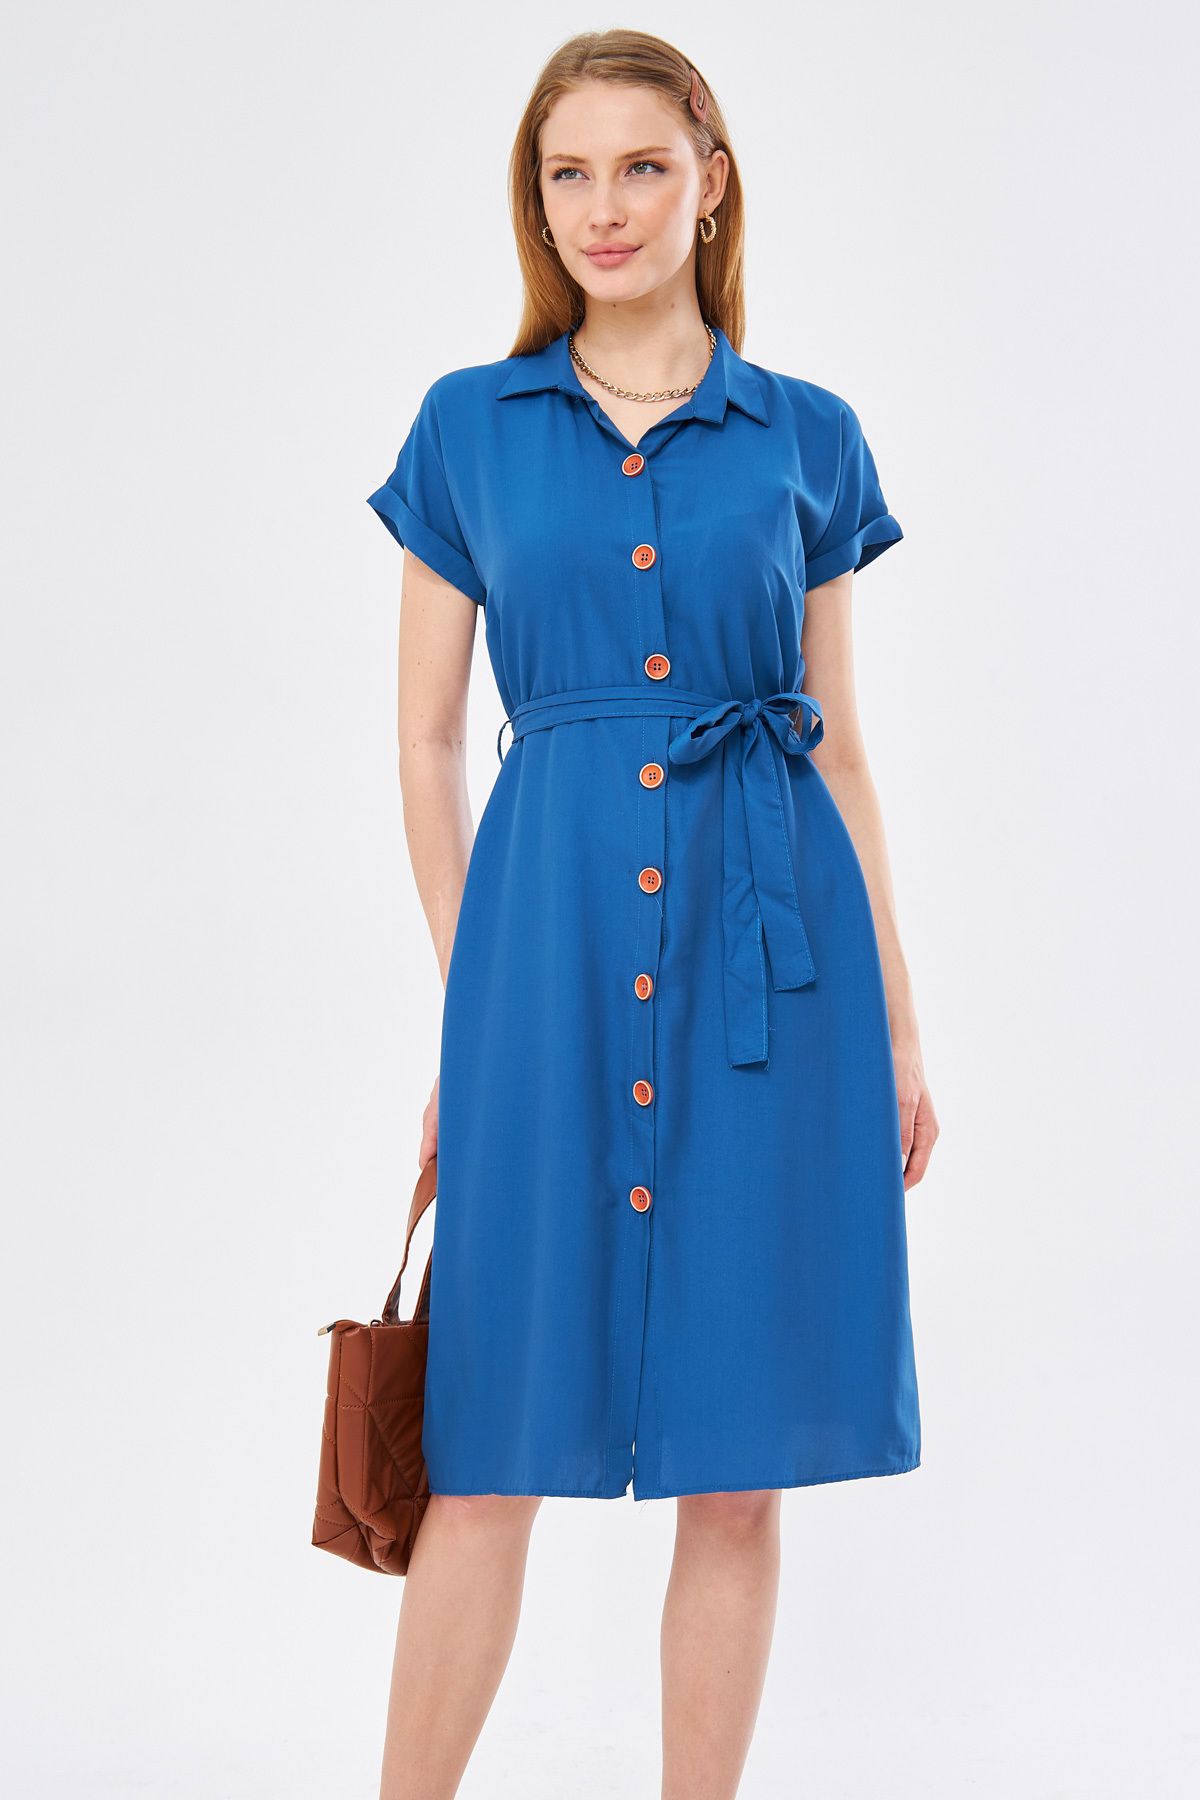 Kadın Koyu Mavi Beli Kemerli Kısa Kol Gömlek Elbise ARM-19Y001068